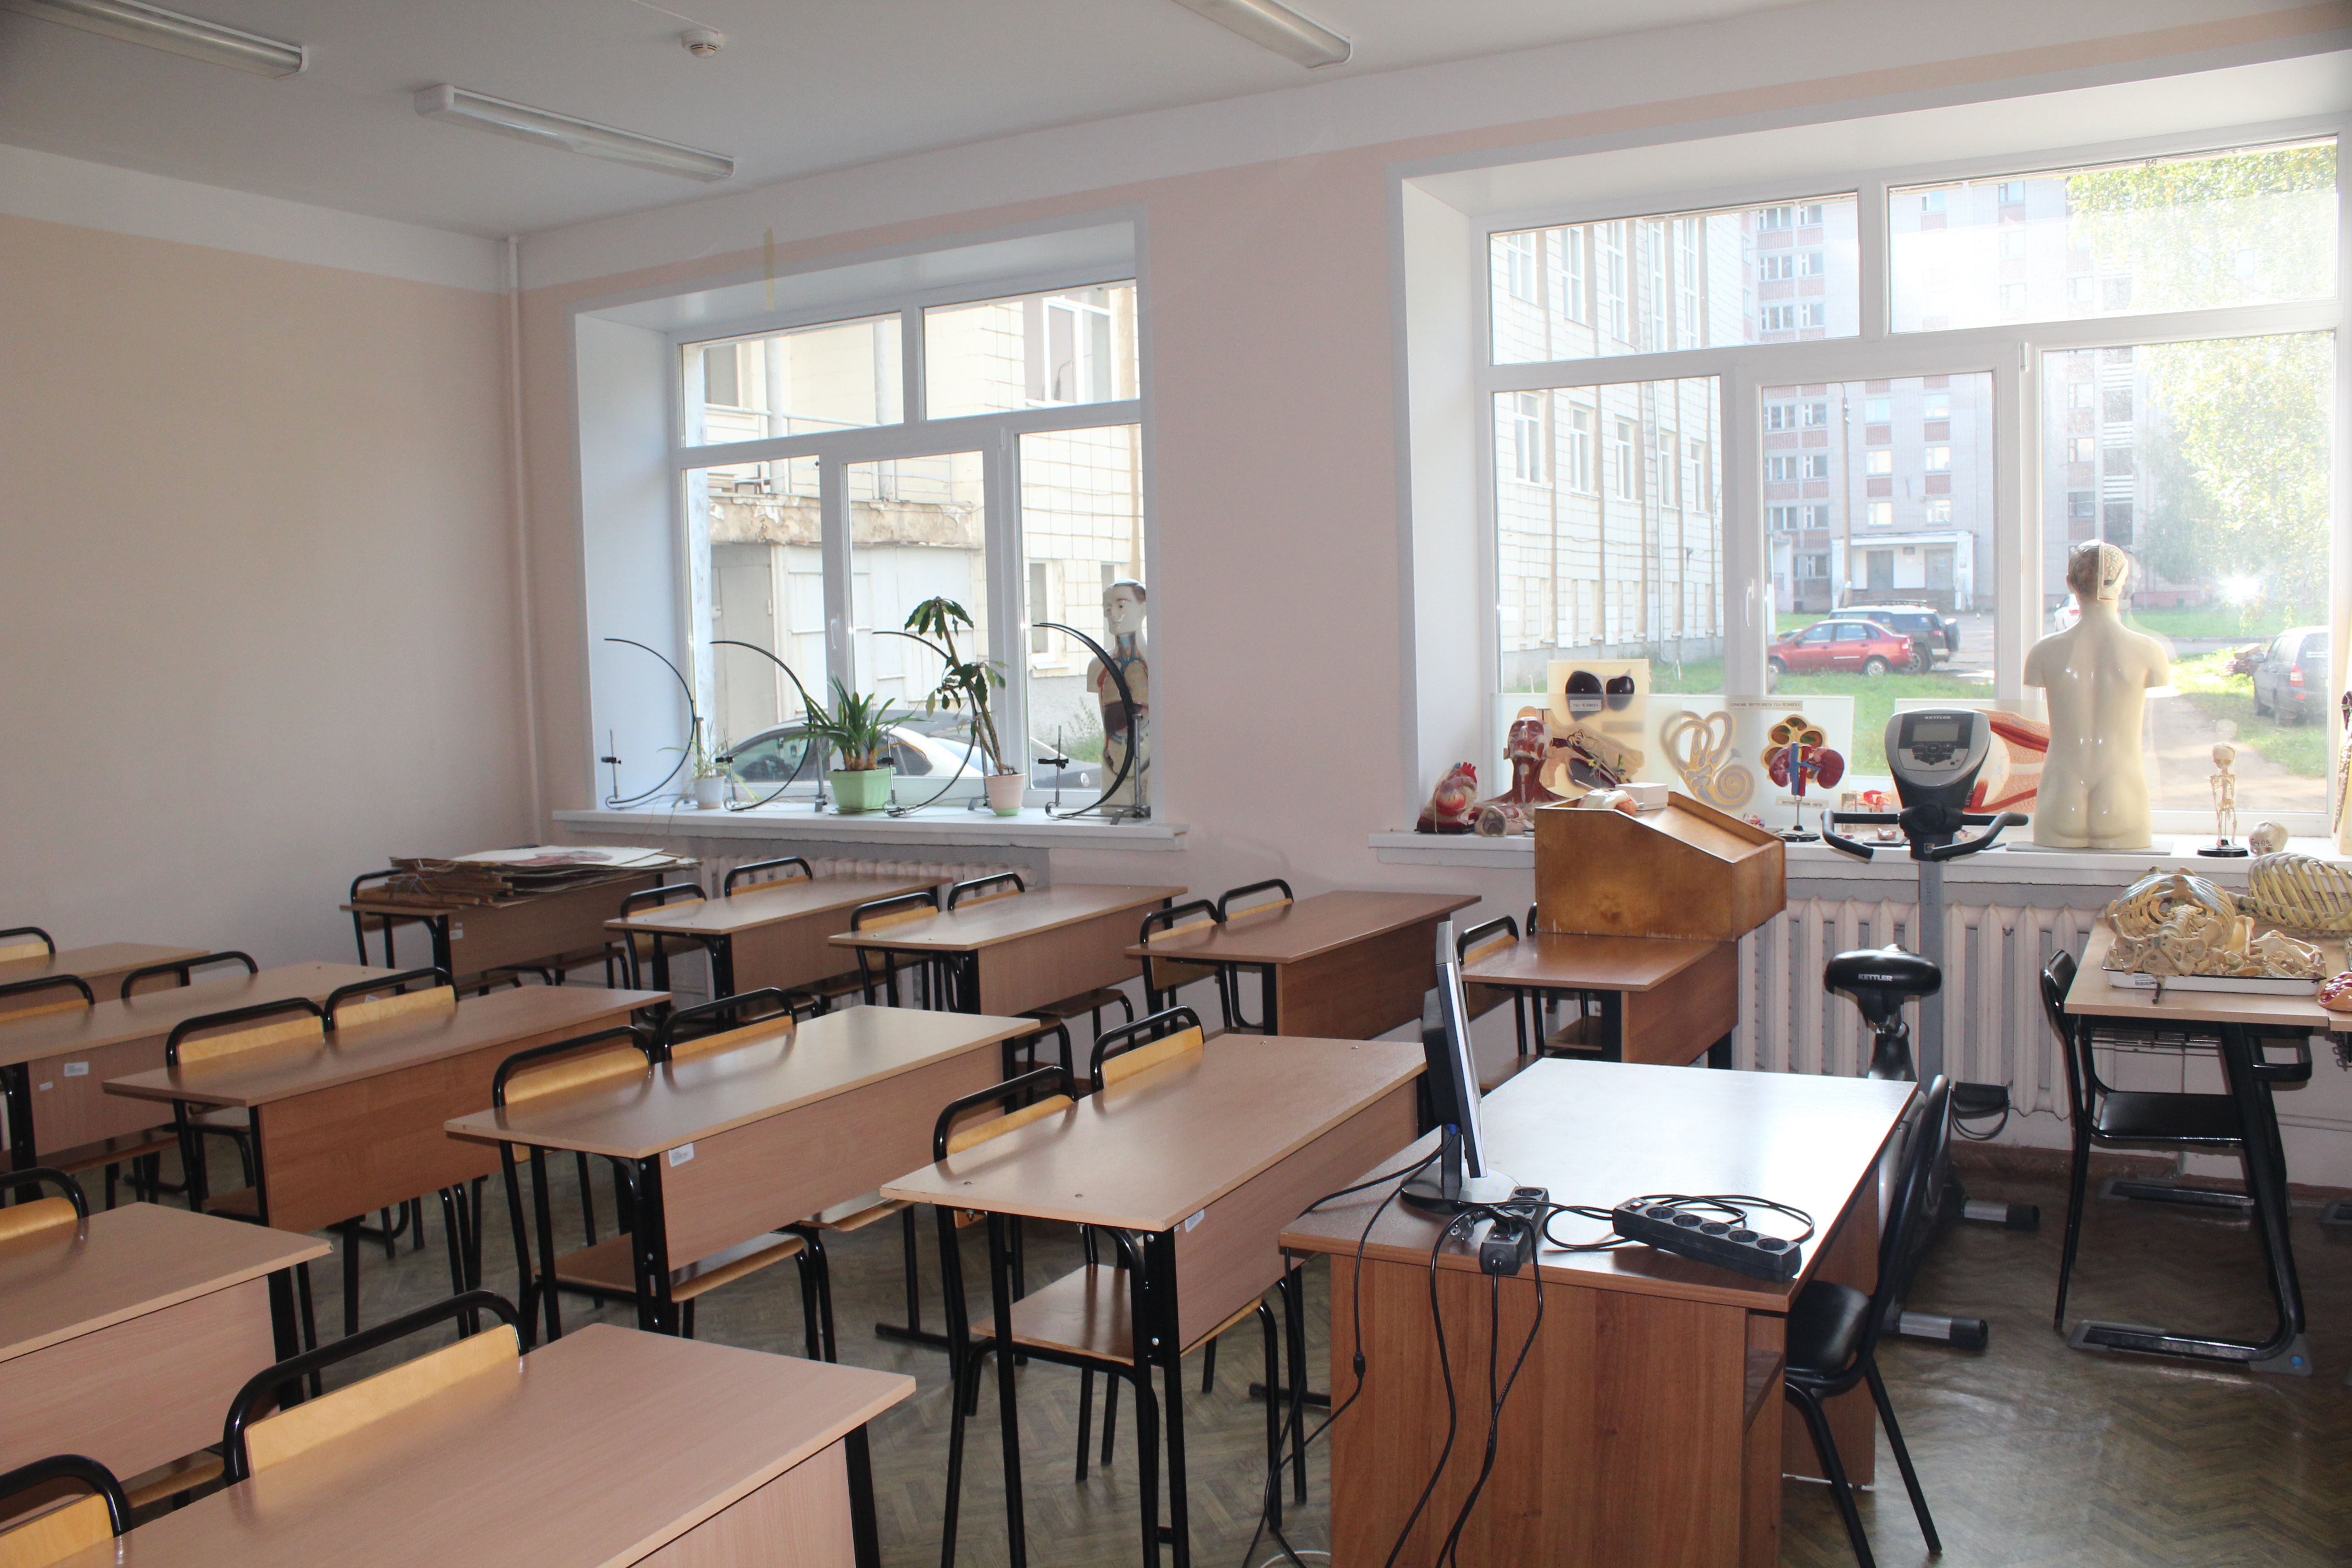 Школа 56 промышленная. Мед кабинеты для биологии в школах. ФМШ-56м. Школа 56 Ярославль. КГТУ фото внутри.